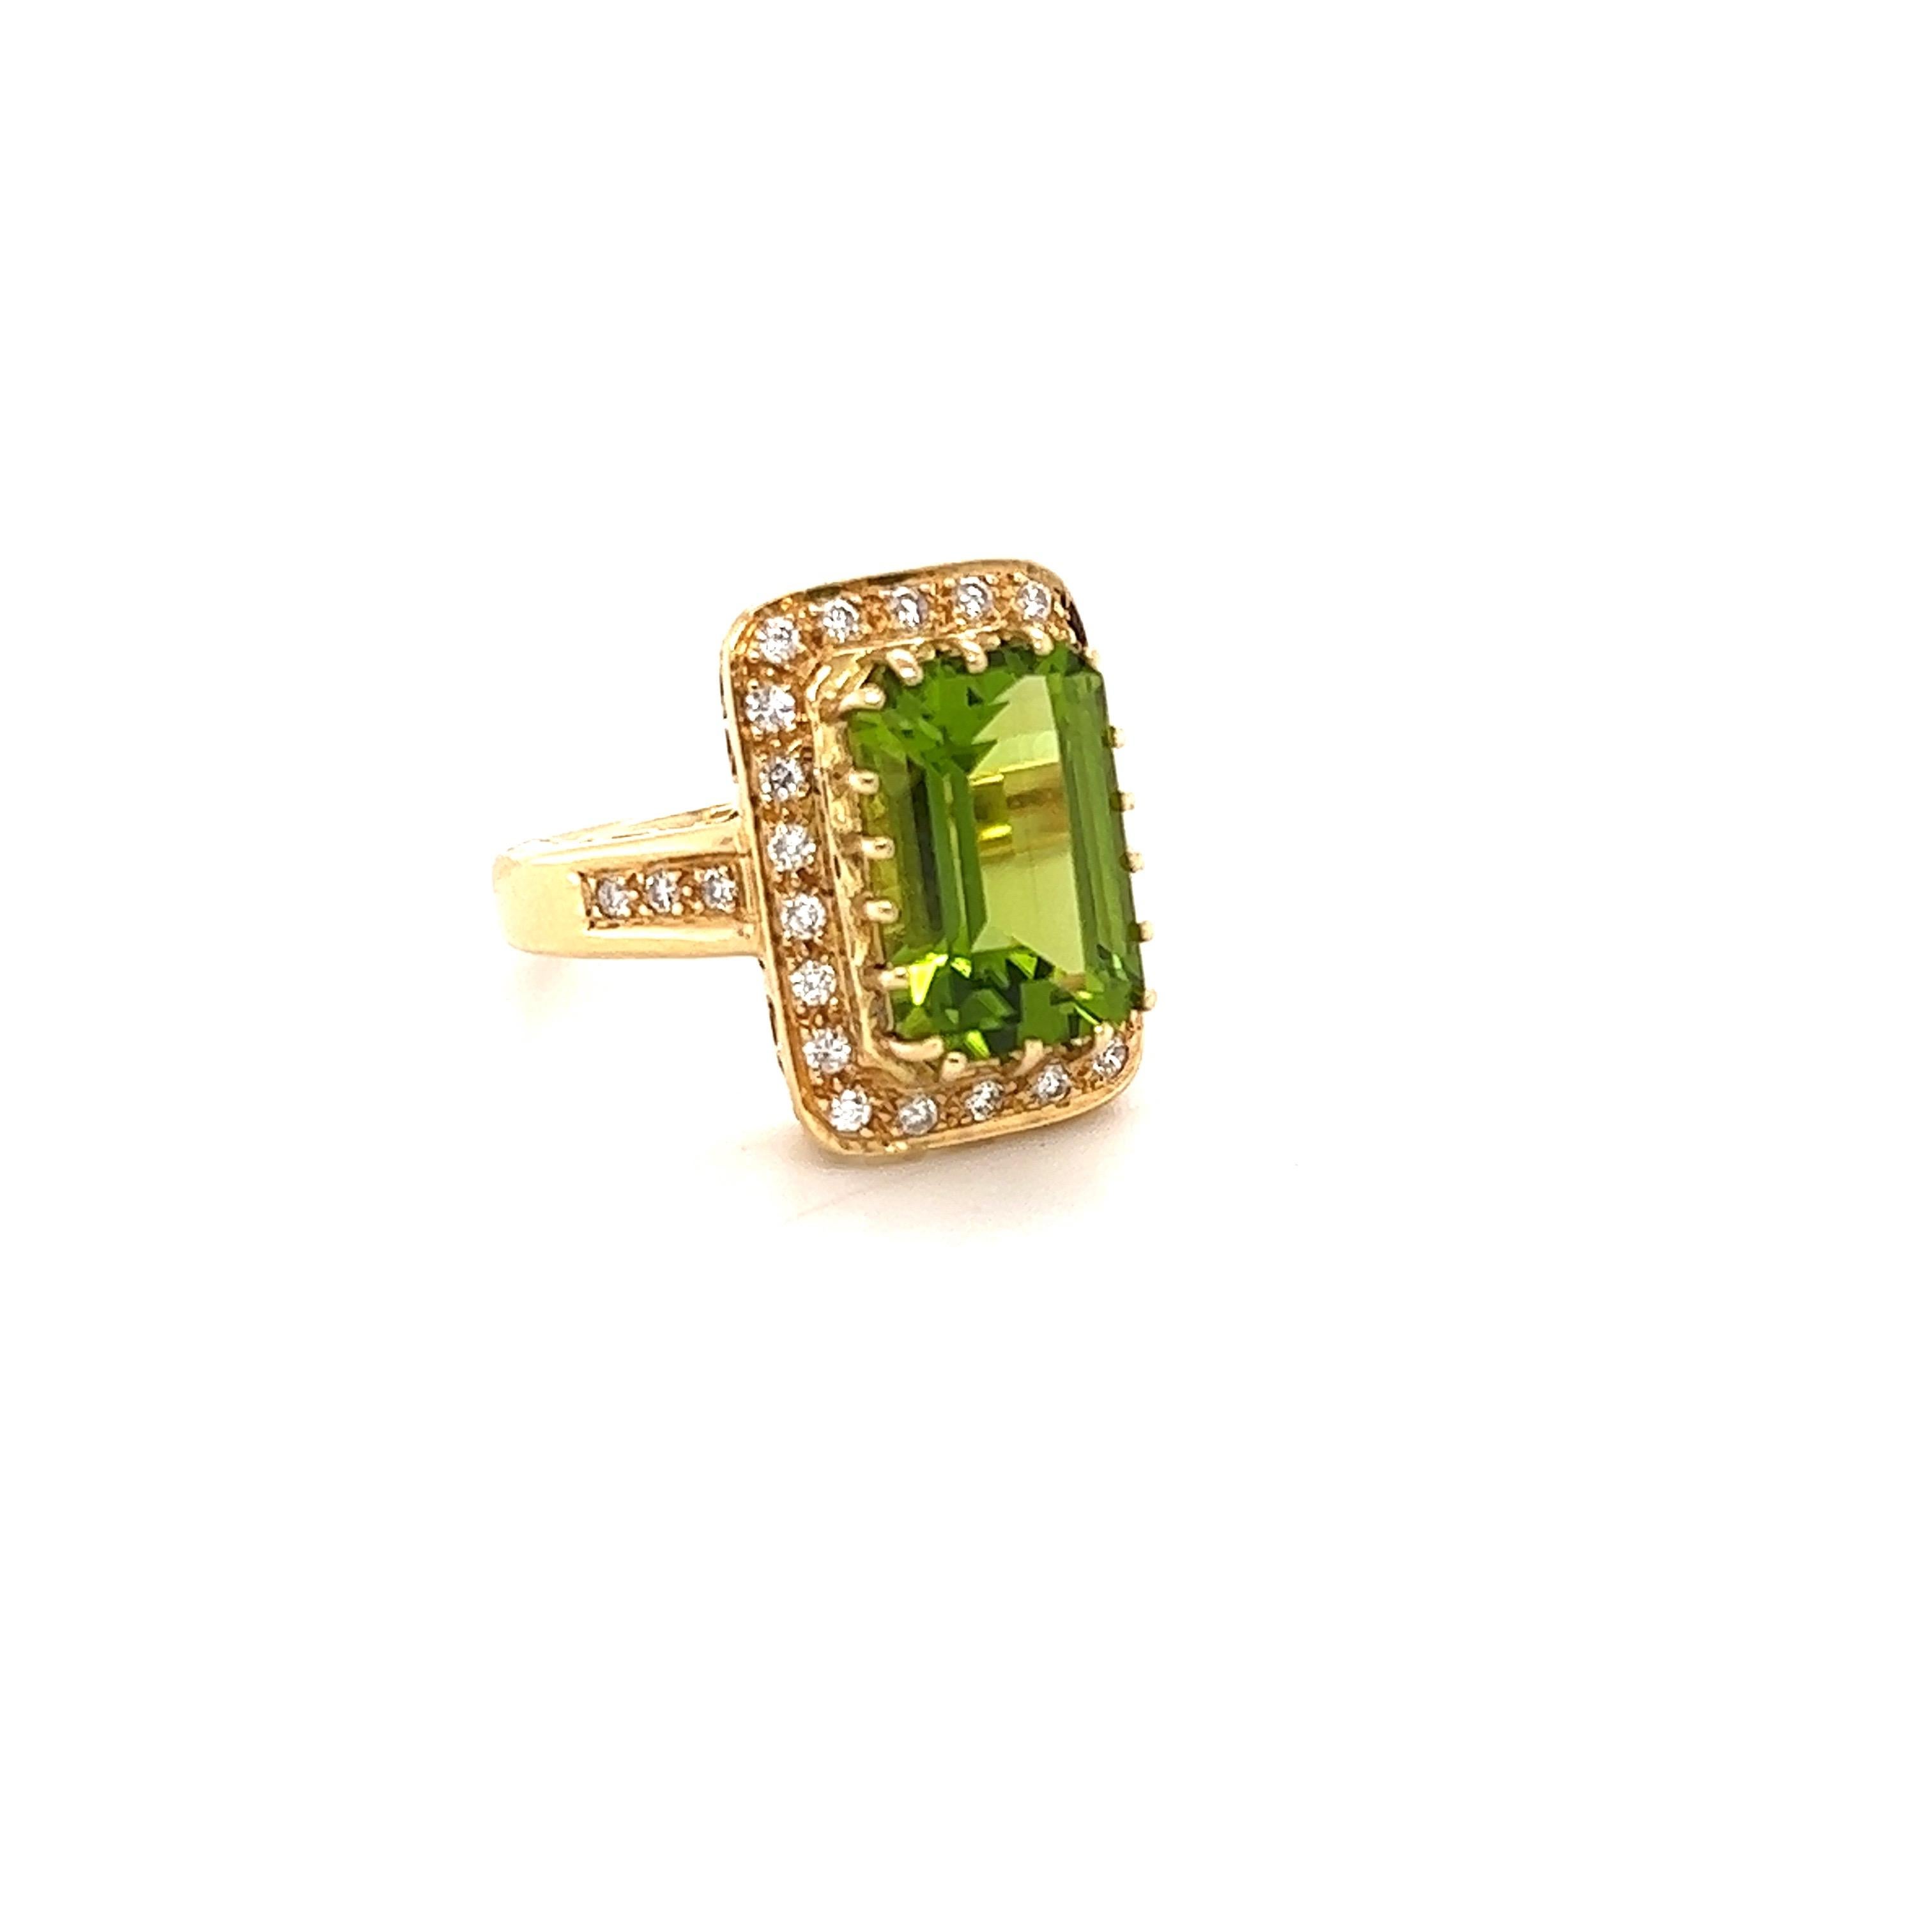 Dieser Peridot und Diamant Ring hat einen natürlichen Smaragdschliff Peridot, die 4,52 Karat wiegt und misst bei 12 mm x 8 mm. Es gibt 28 Diamanten im Rundschliff, die 0,50 Karat wiegen und eine Reinheit und Farbe von SI-F haben. Das